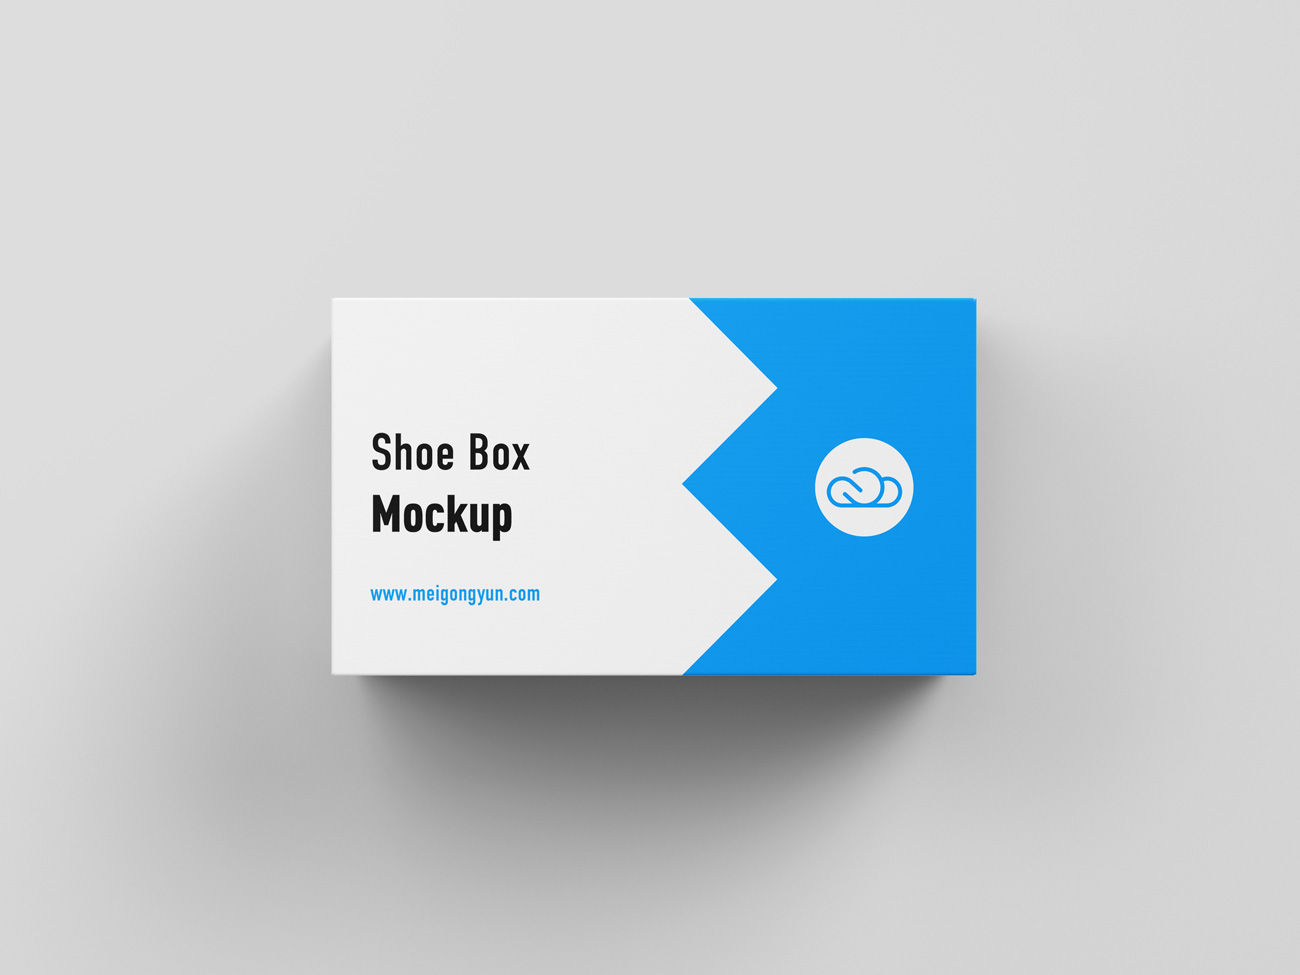 长方形鞋盒设计包装提案样机PSD模板素材 Shoe box